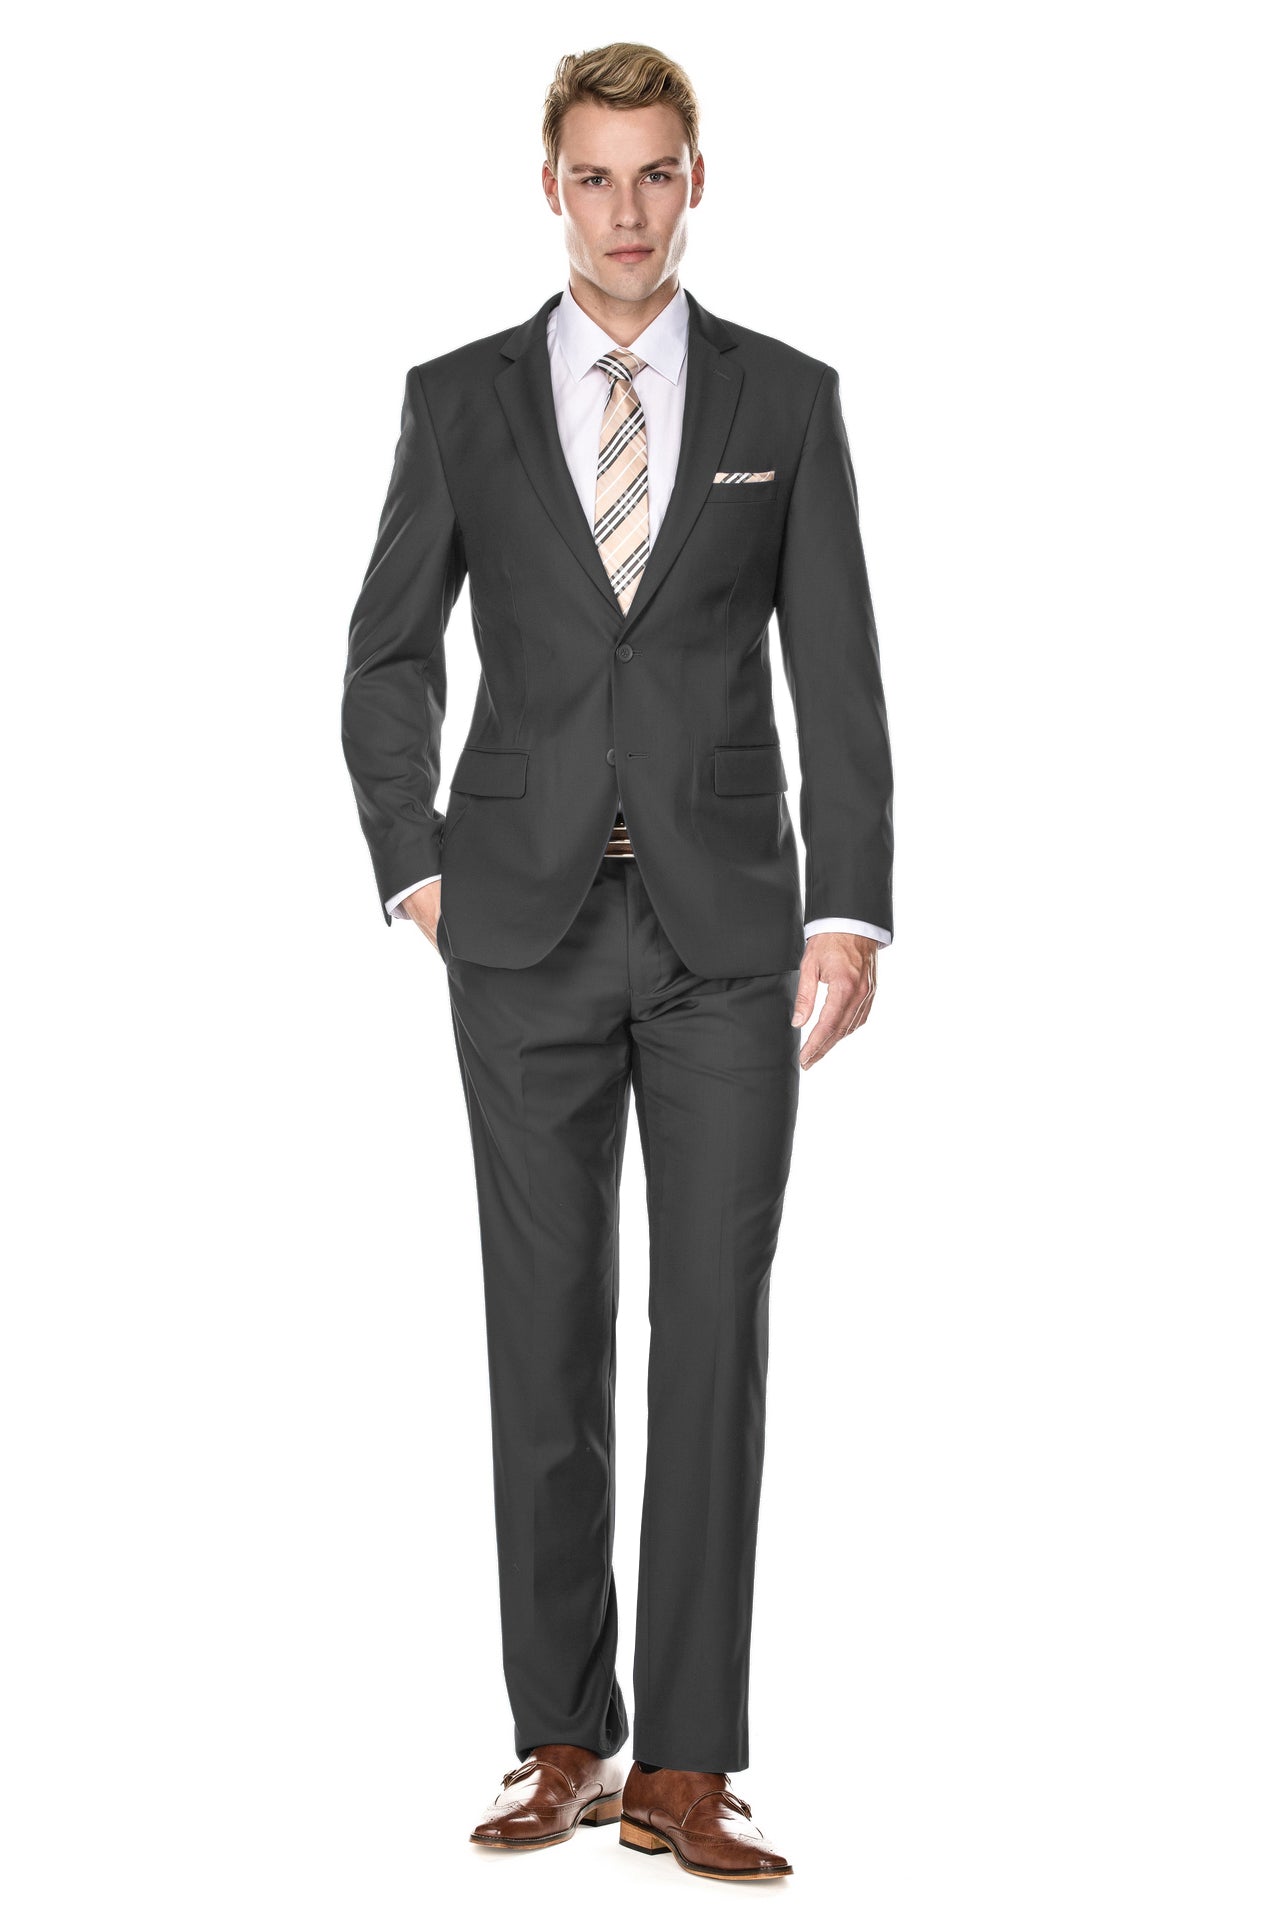 Braveman Men's Classic Fit 2PC Suits